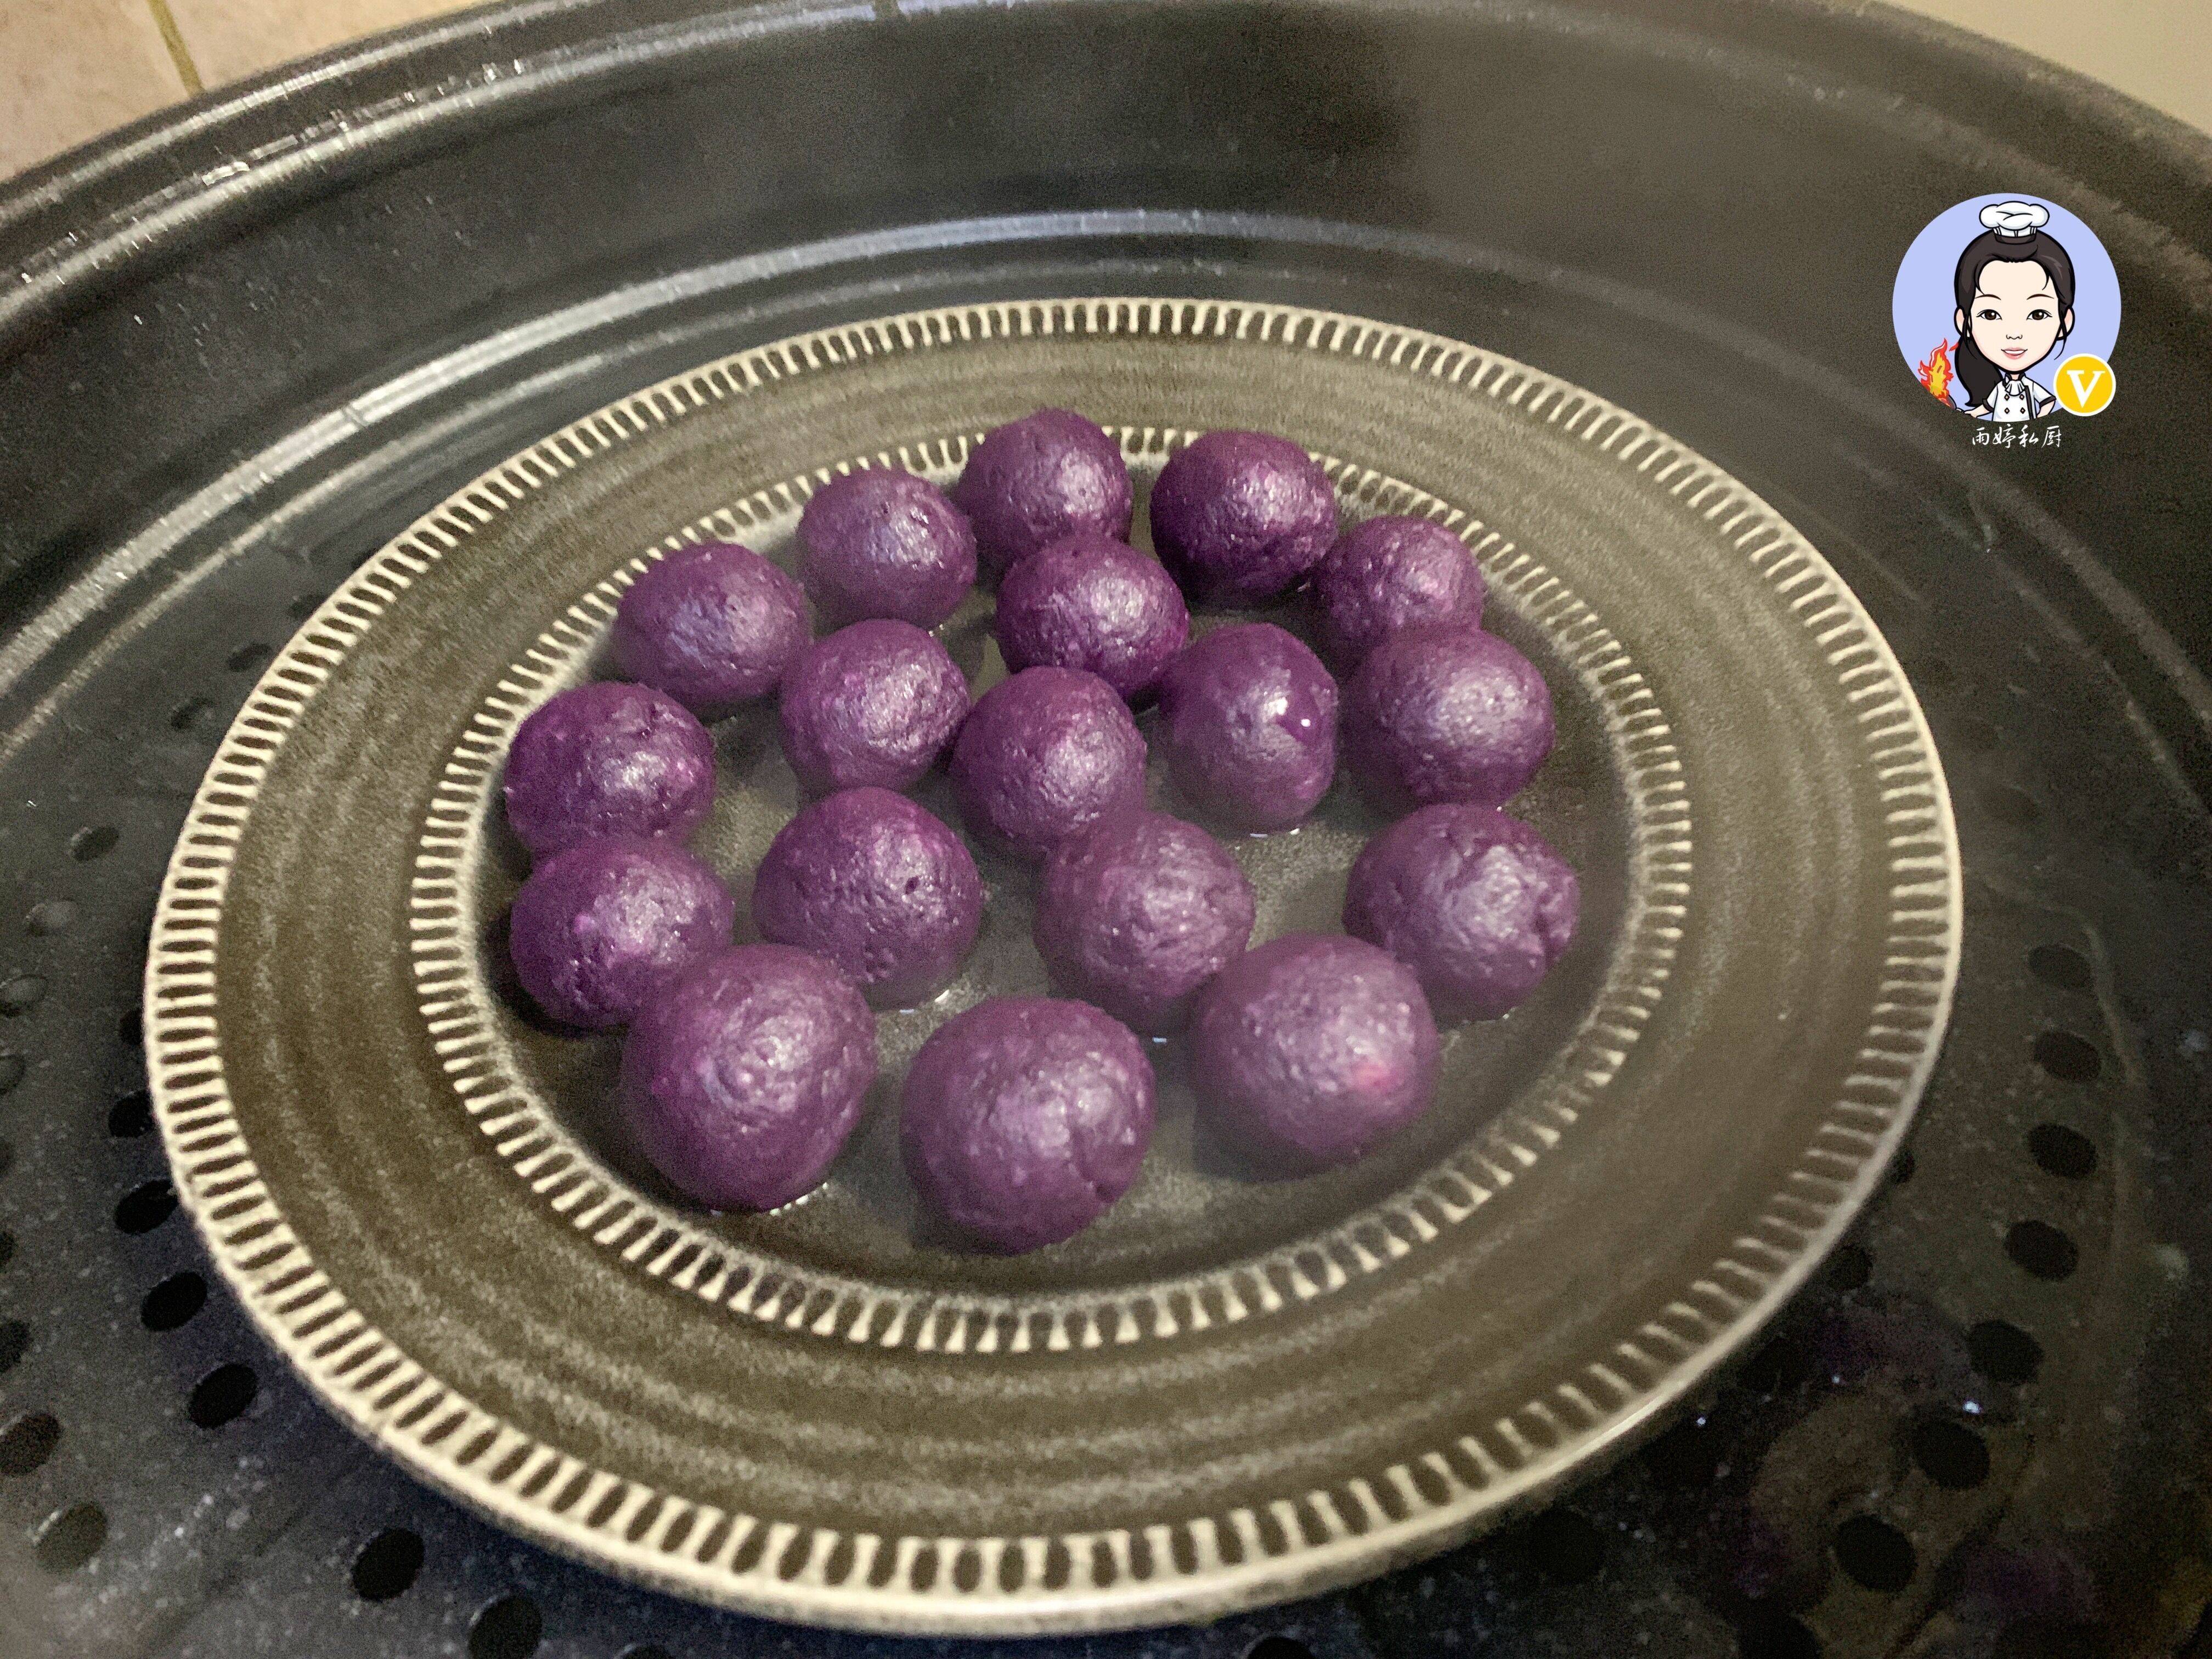 把紫薯面团分成小面剂子,分别揉成光滑的紫薯糯米丸子,放入盘中再次入